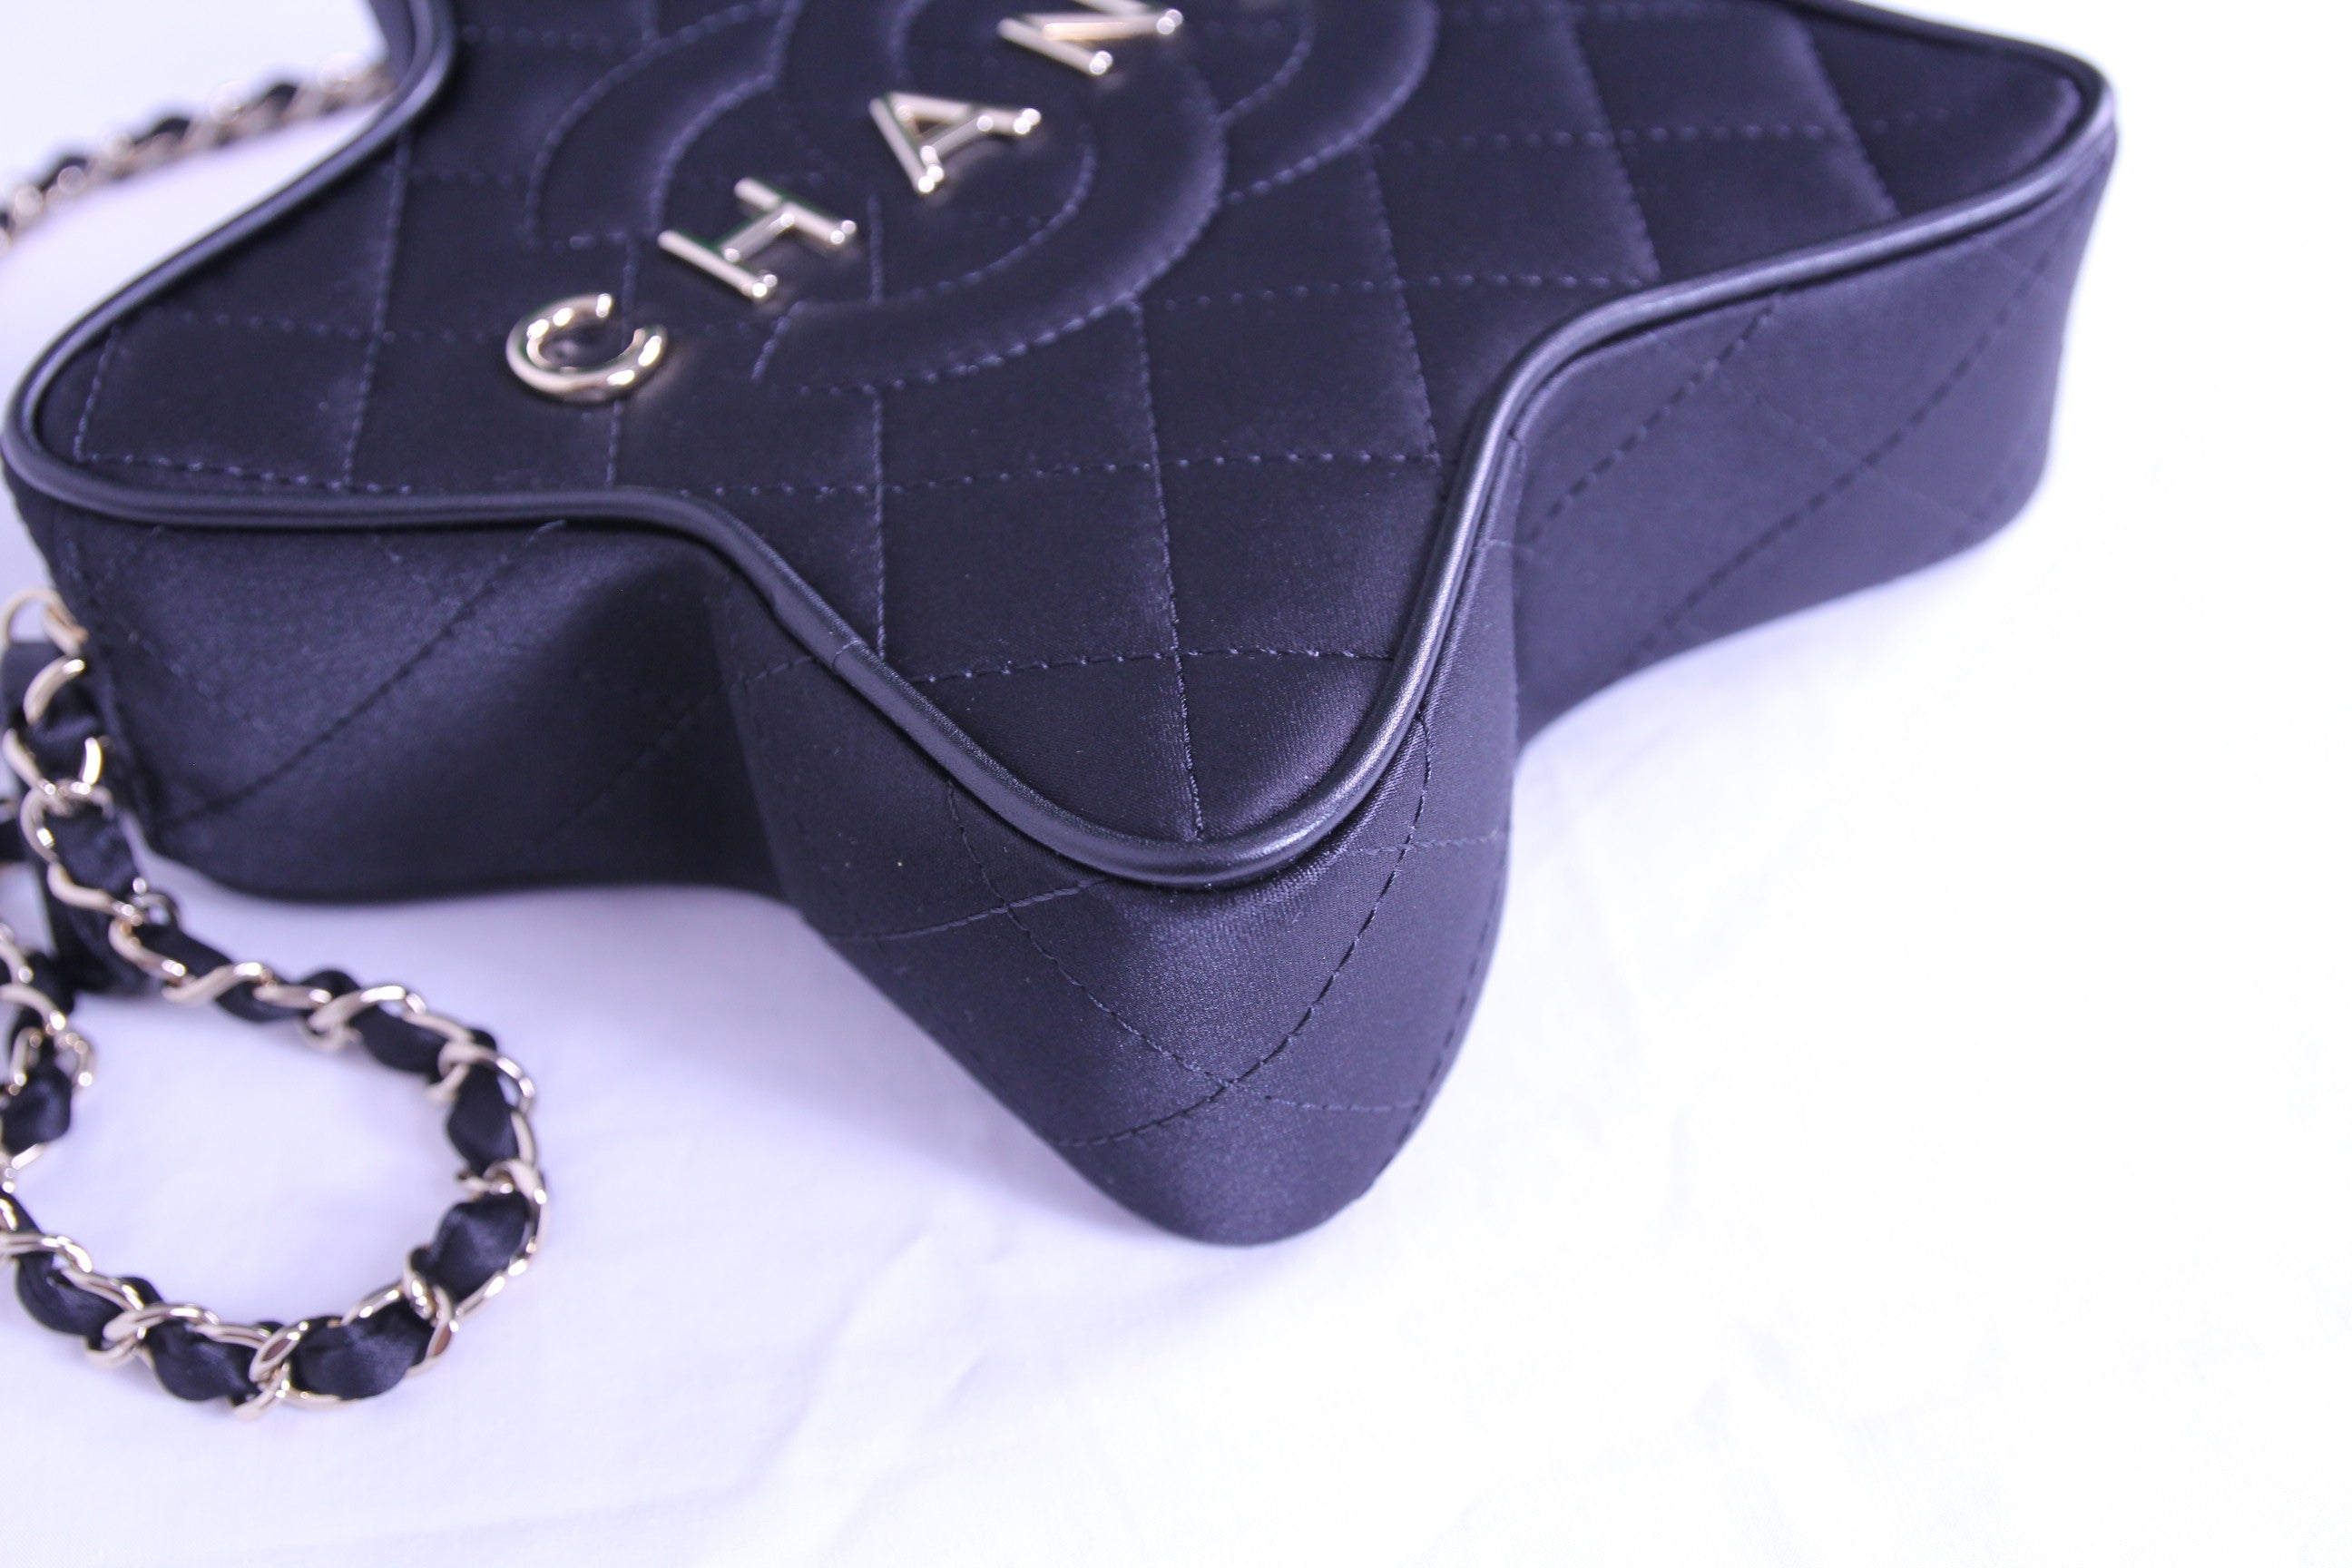 Corner of Chanel star handbag in finished in black satin